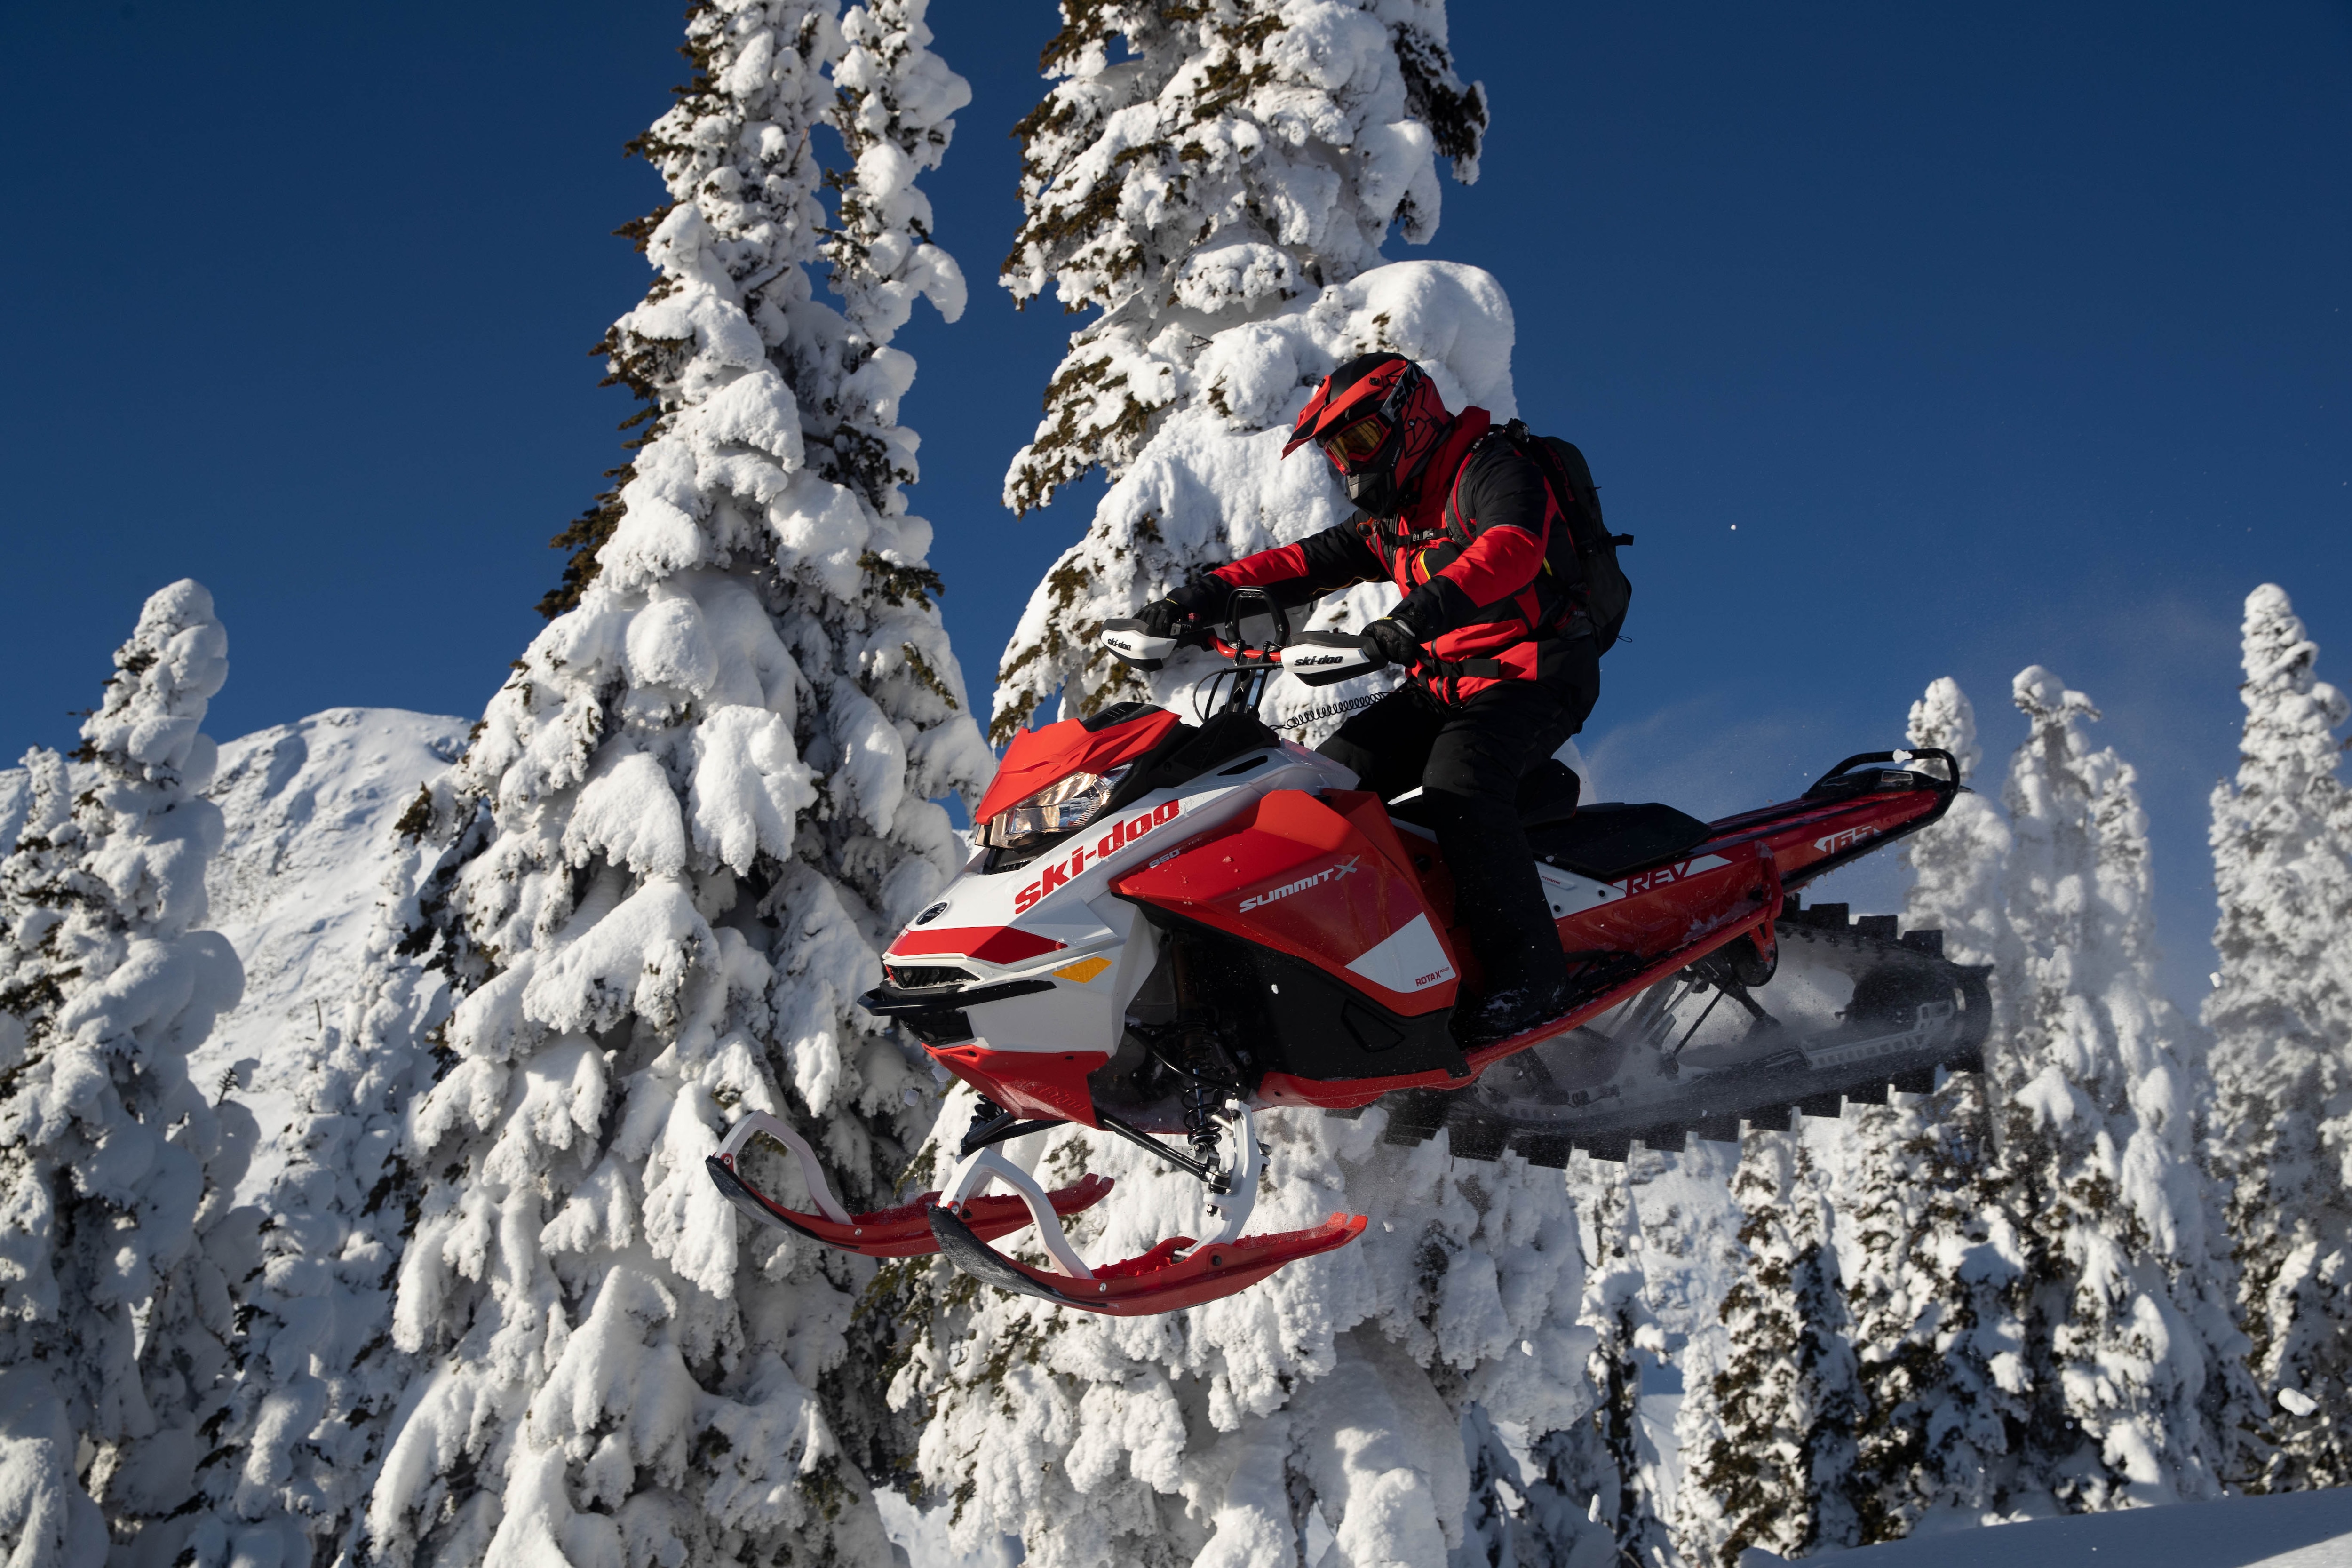 Mann fährt einen Ski-Doo Motorschlitten und fliegt durch die Luft